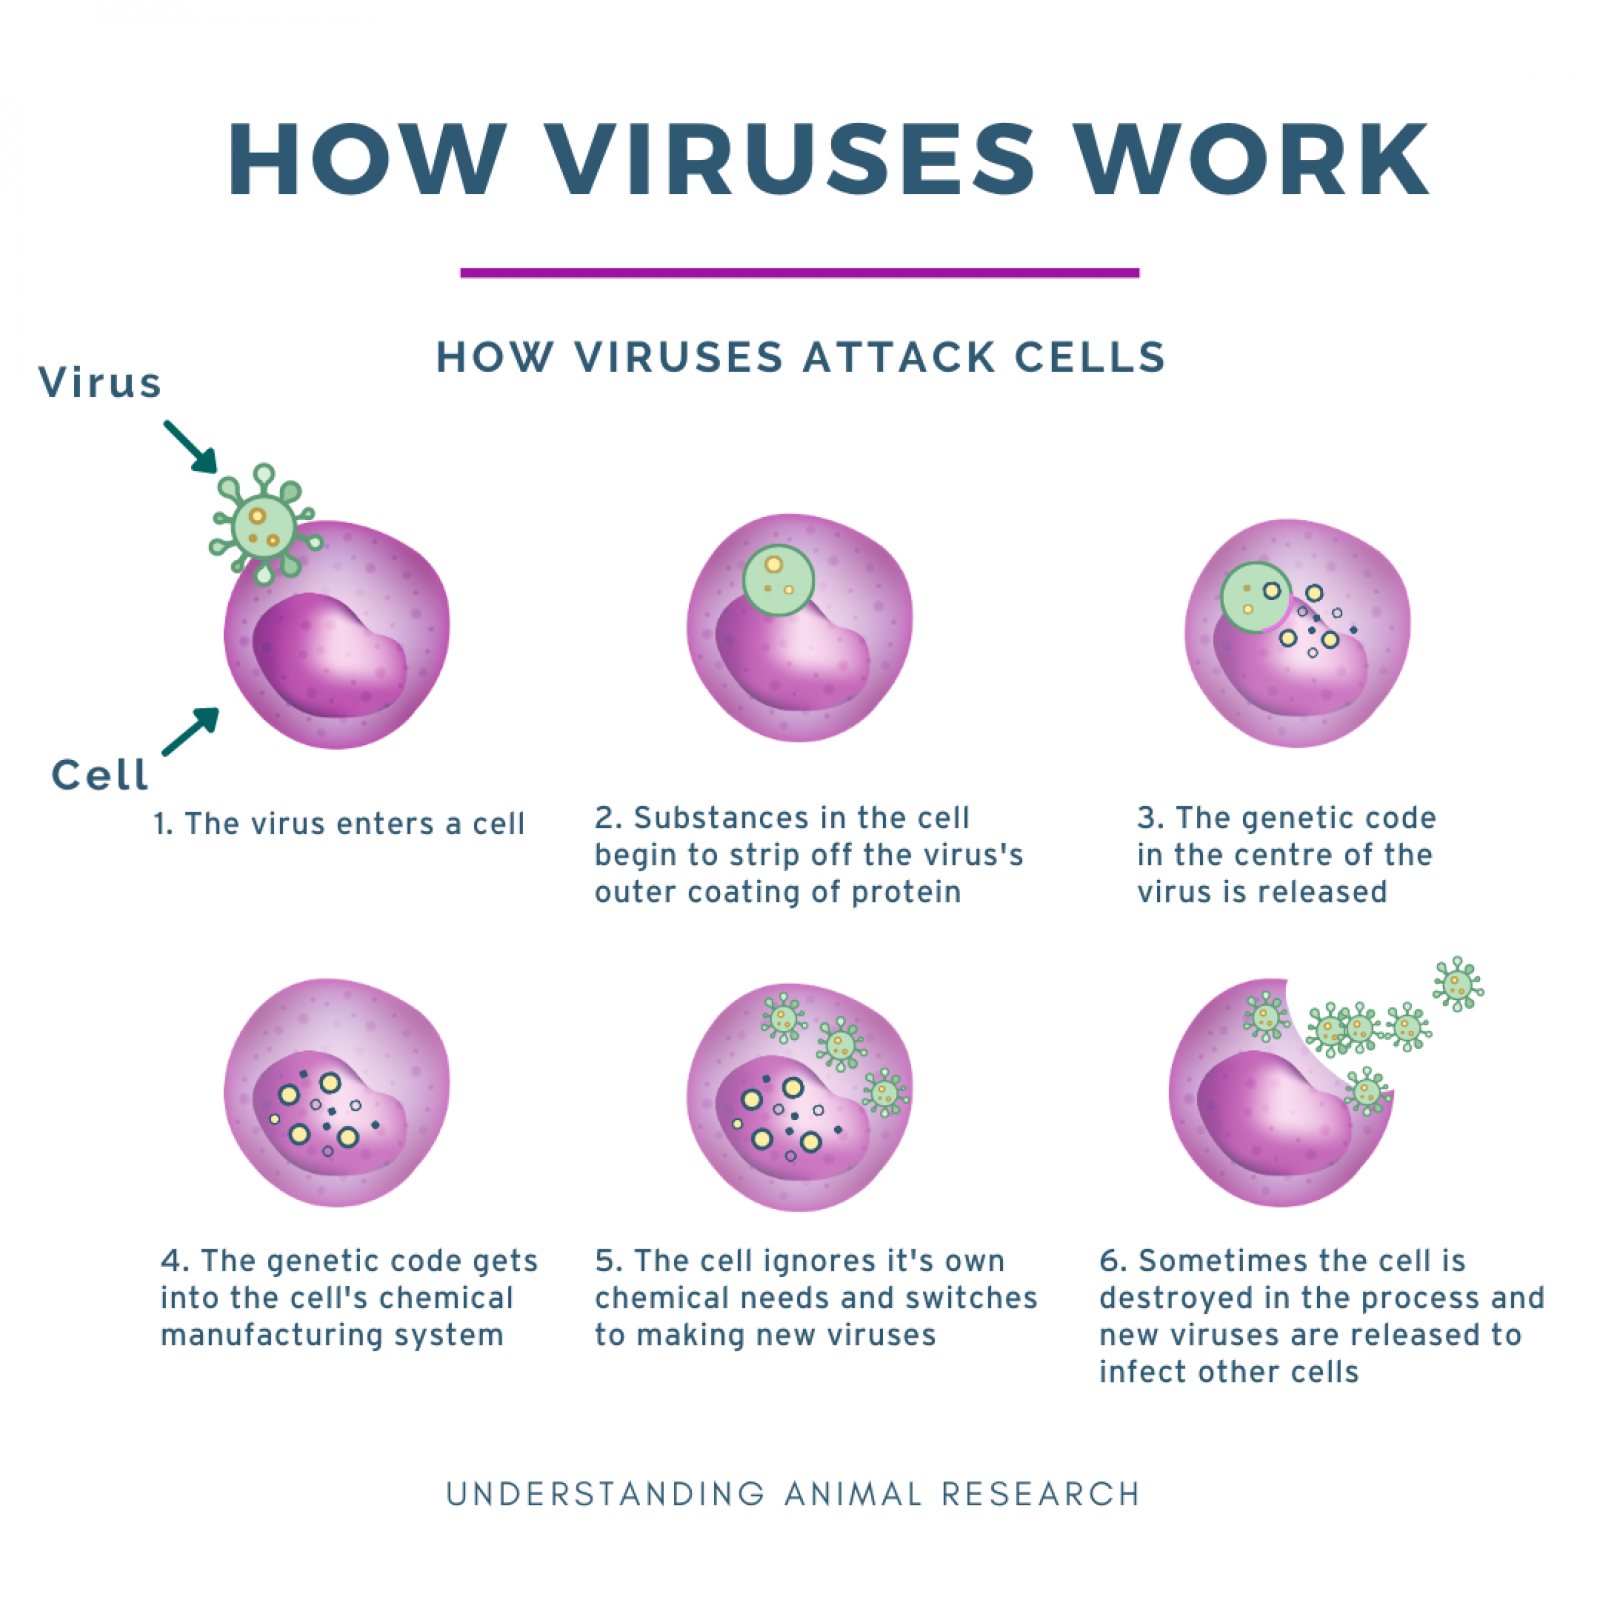 How viruses work